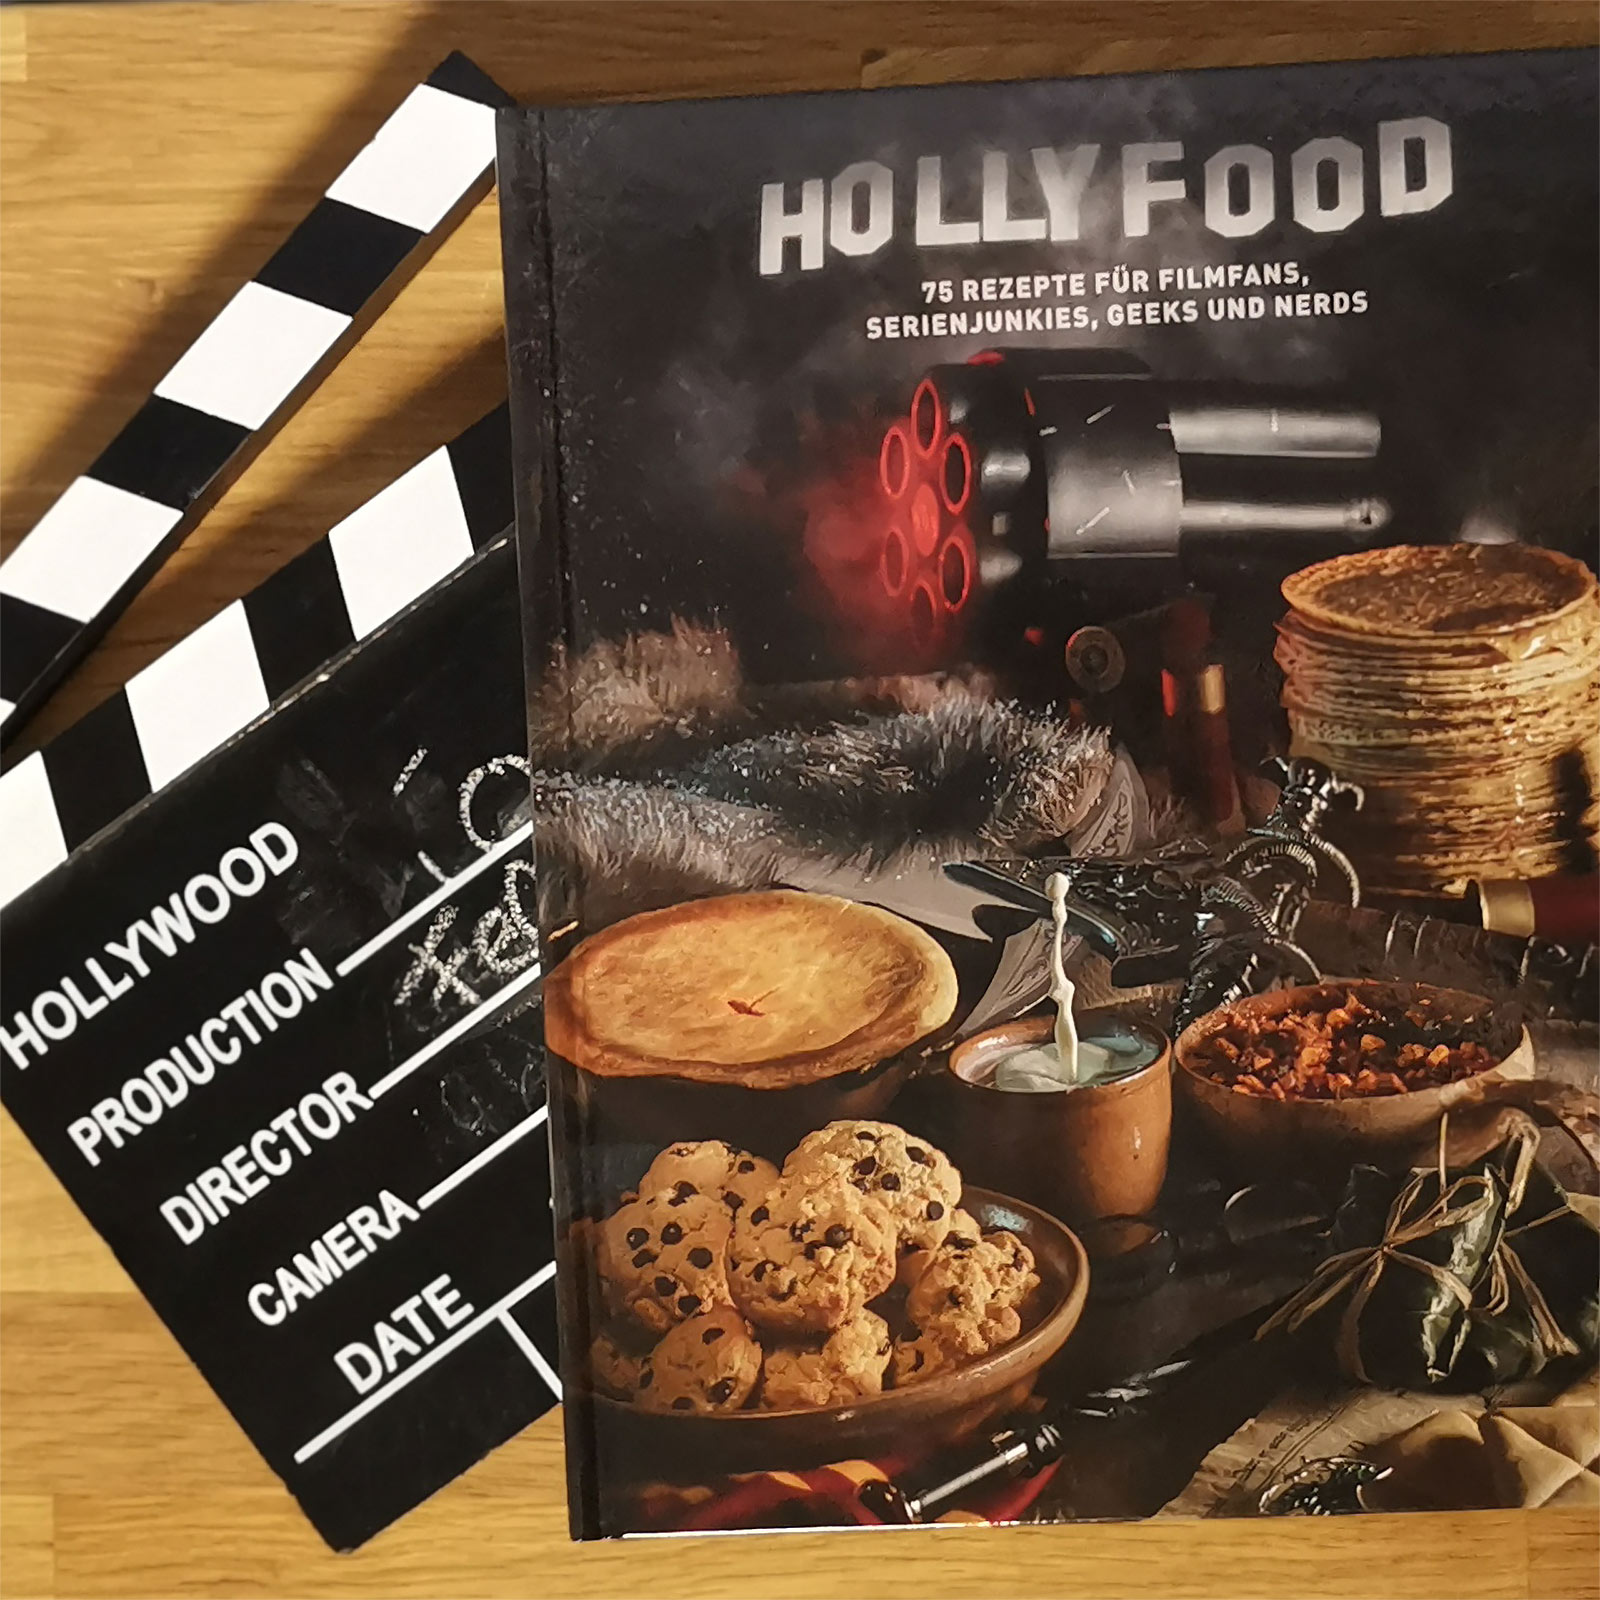 Hollyfood - Kochbuch für Filmfans, Serienjunkies, Geeks und Nerds